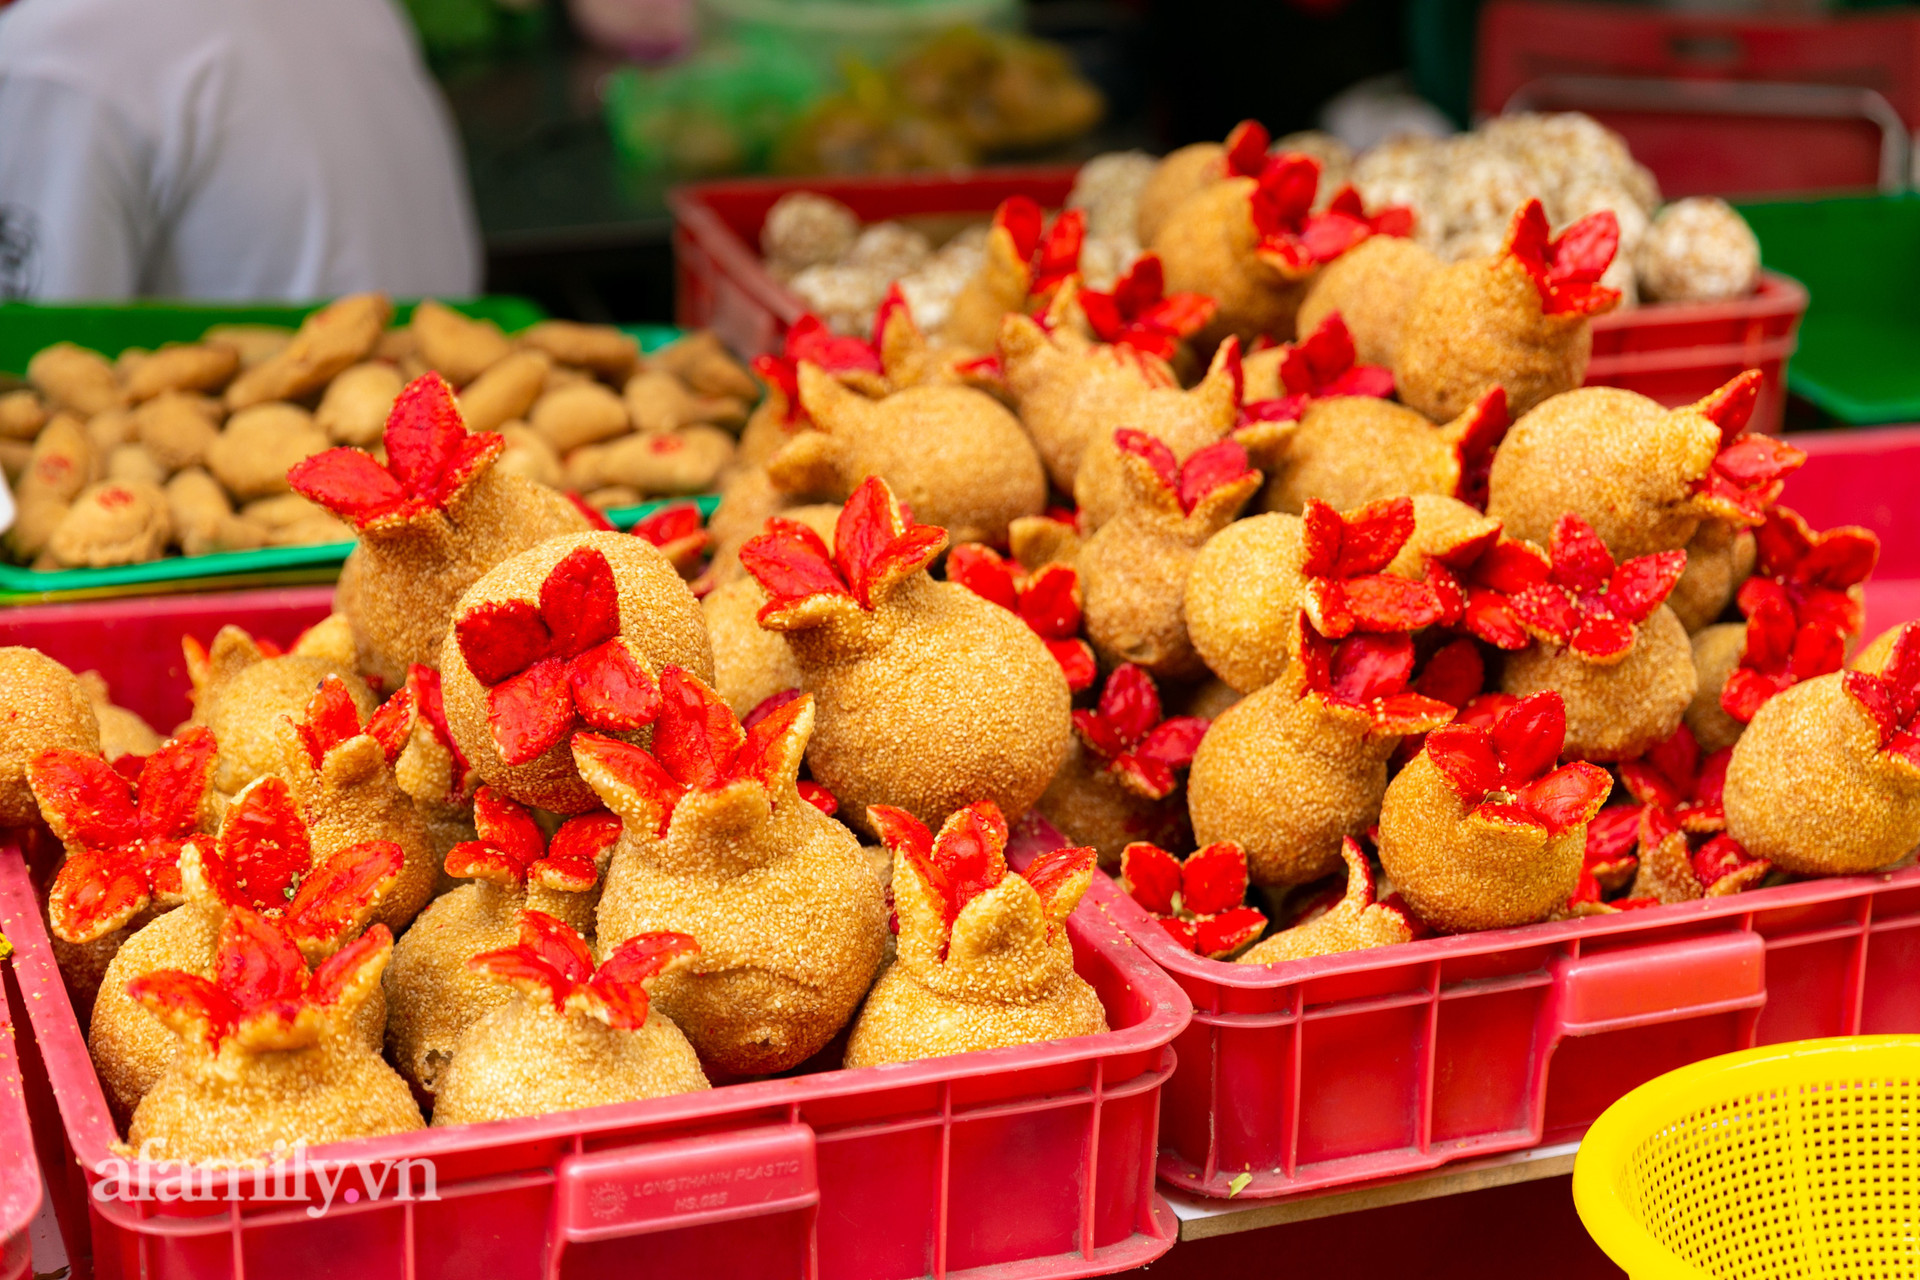 Độc đáo bánh lựu cầu duyên truyền thống của người Hoa ở Sài Gòn: Chỉ bán duy nhất một lần trong năm, 4 người phụ làm hơn 1.000 cái mà bán sạch trong 1 tiếng - Ảnh 24.